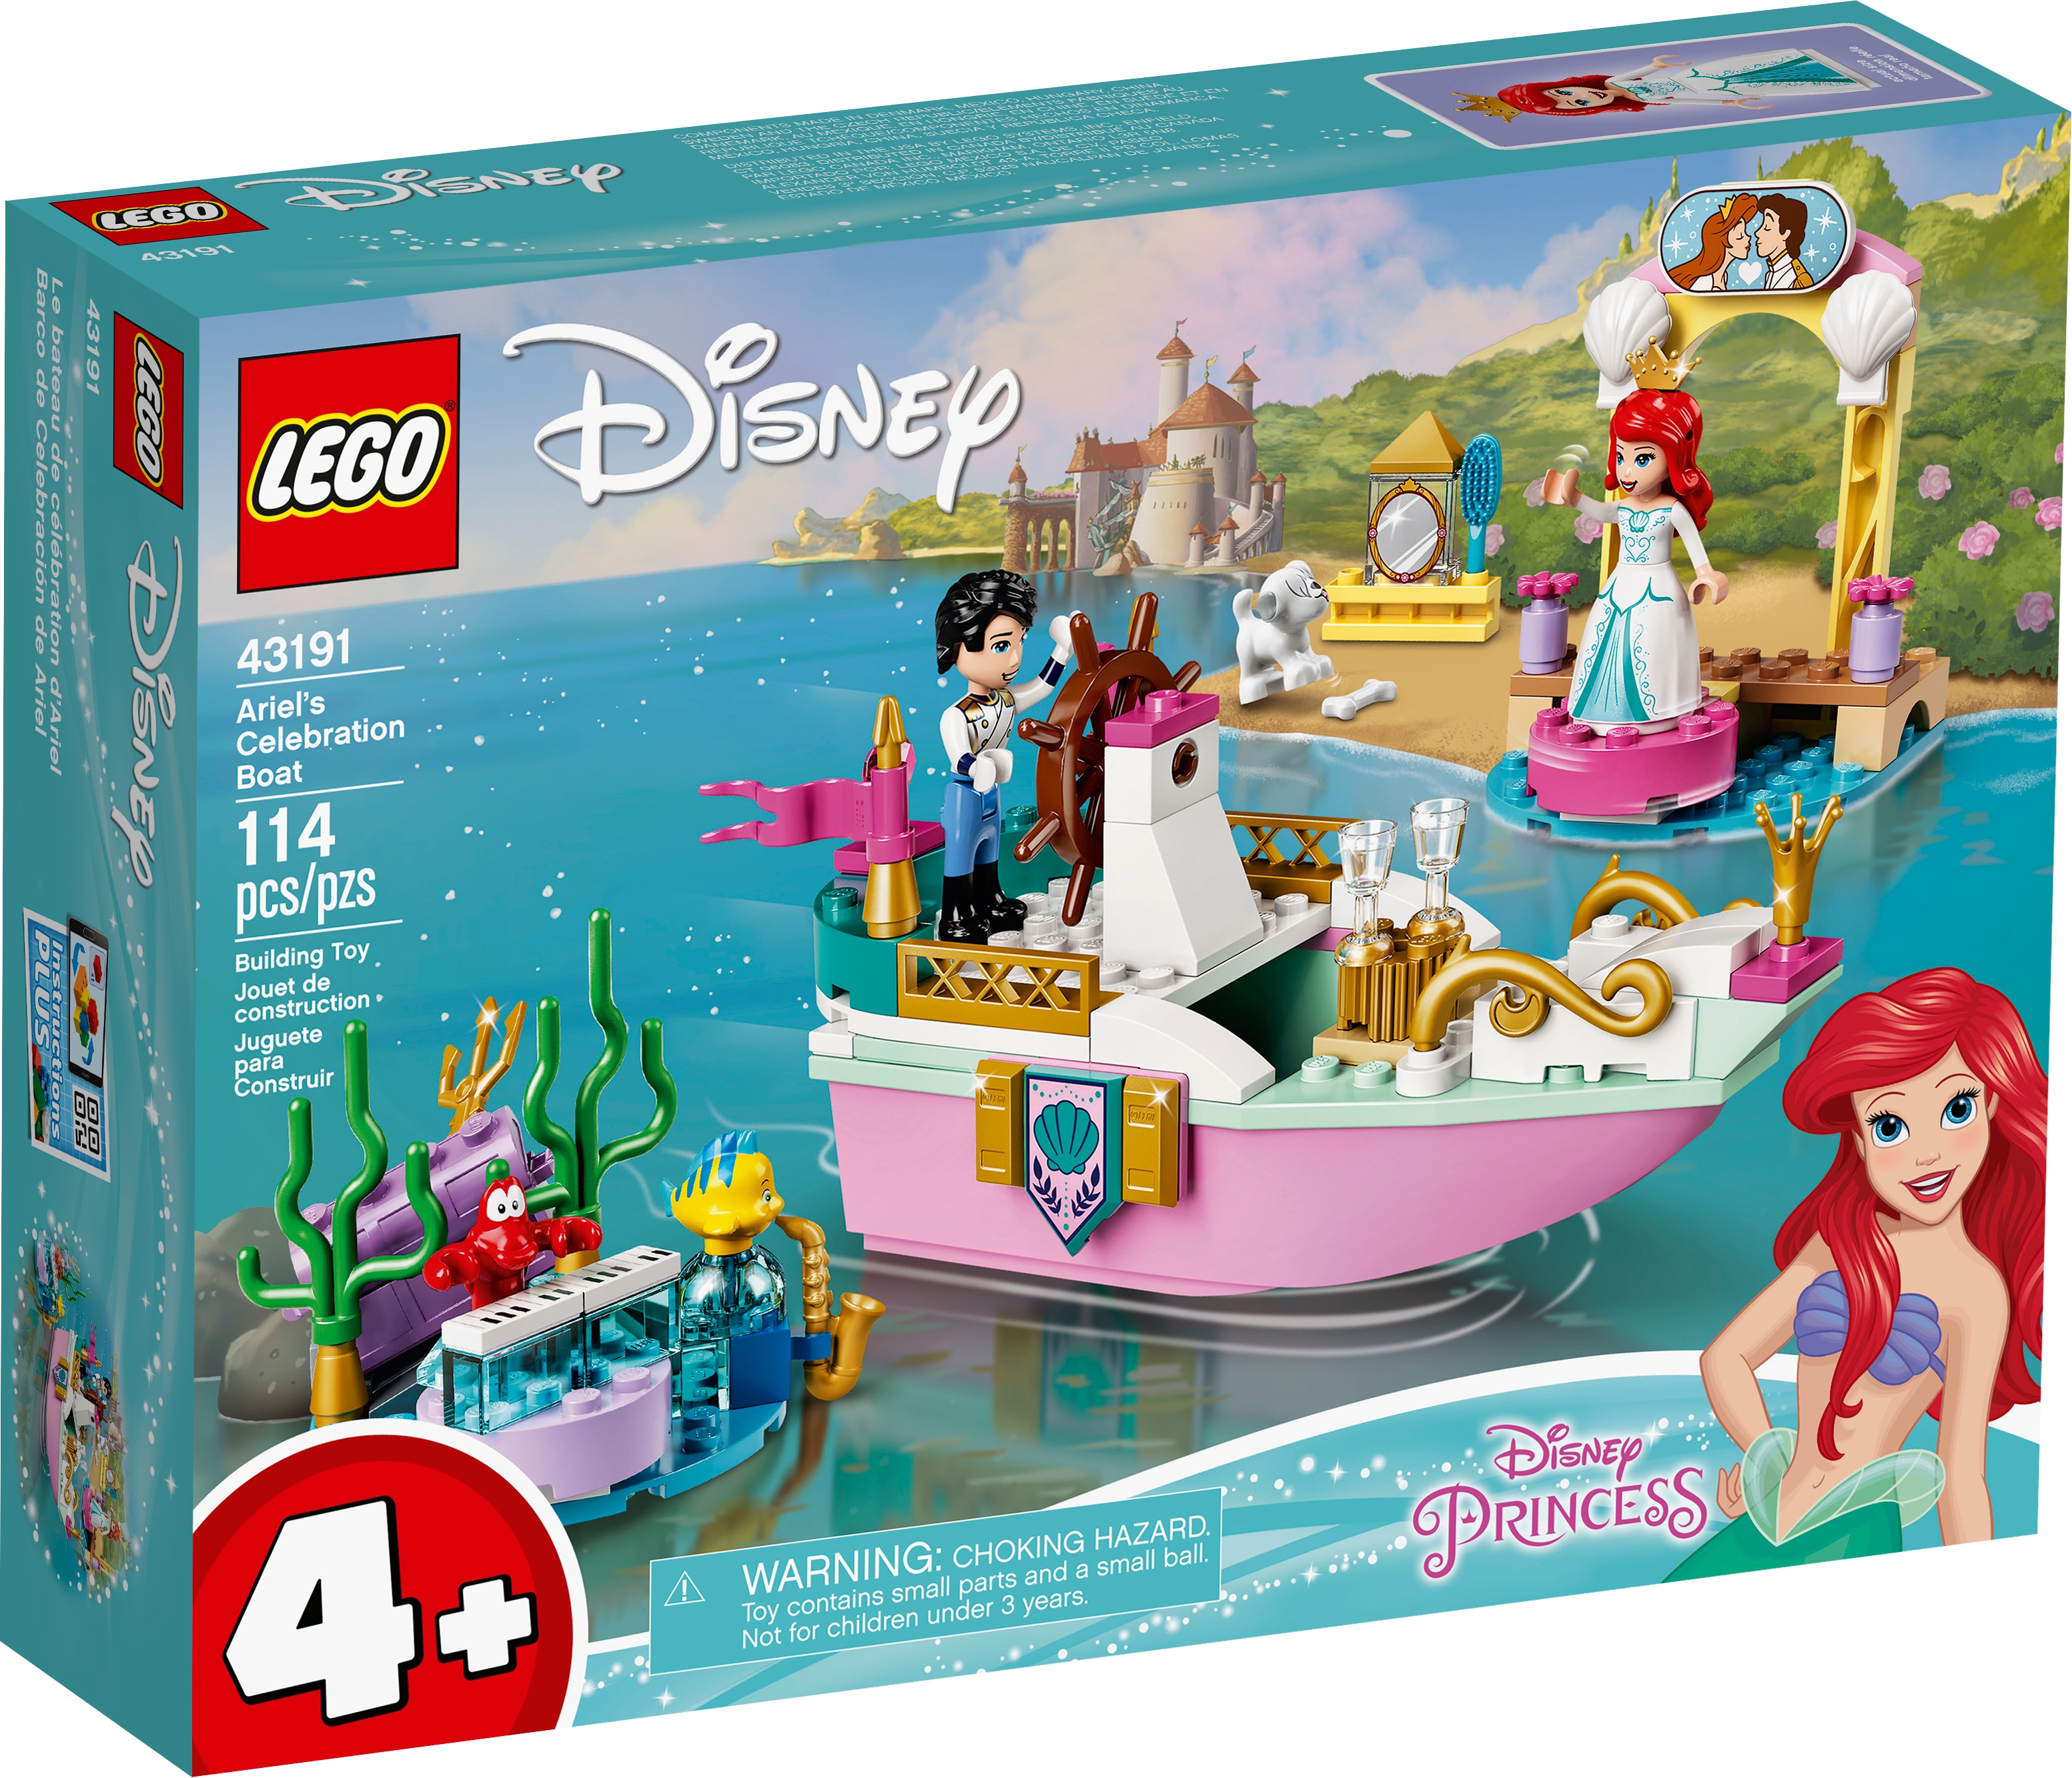 Friends Princess Mermaid Ariel Set Model Fit LEGO Building Block Girl Toy Kid oo 